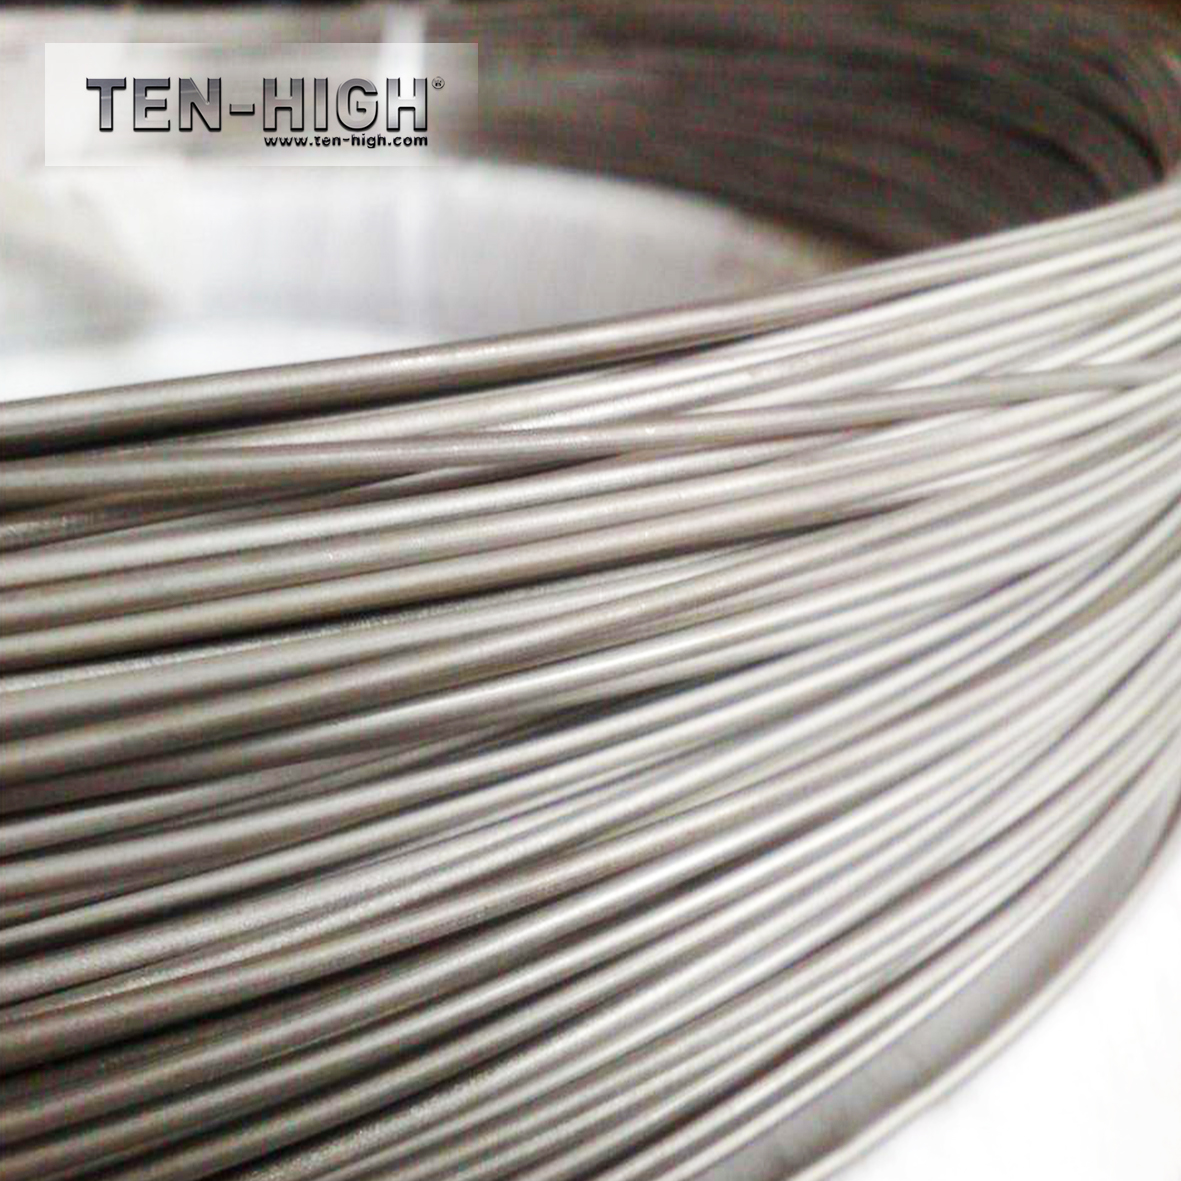 10 kg bays titanium wire for welding TA1 TA2 TA3 TC4 TA9 Dia. 1.2 1.6 2.4 2.6 3mm capillary welding pure titanium ad